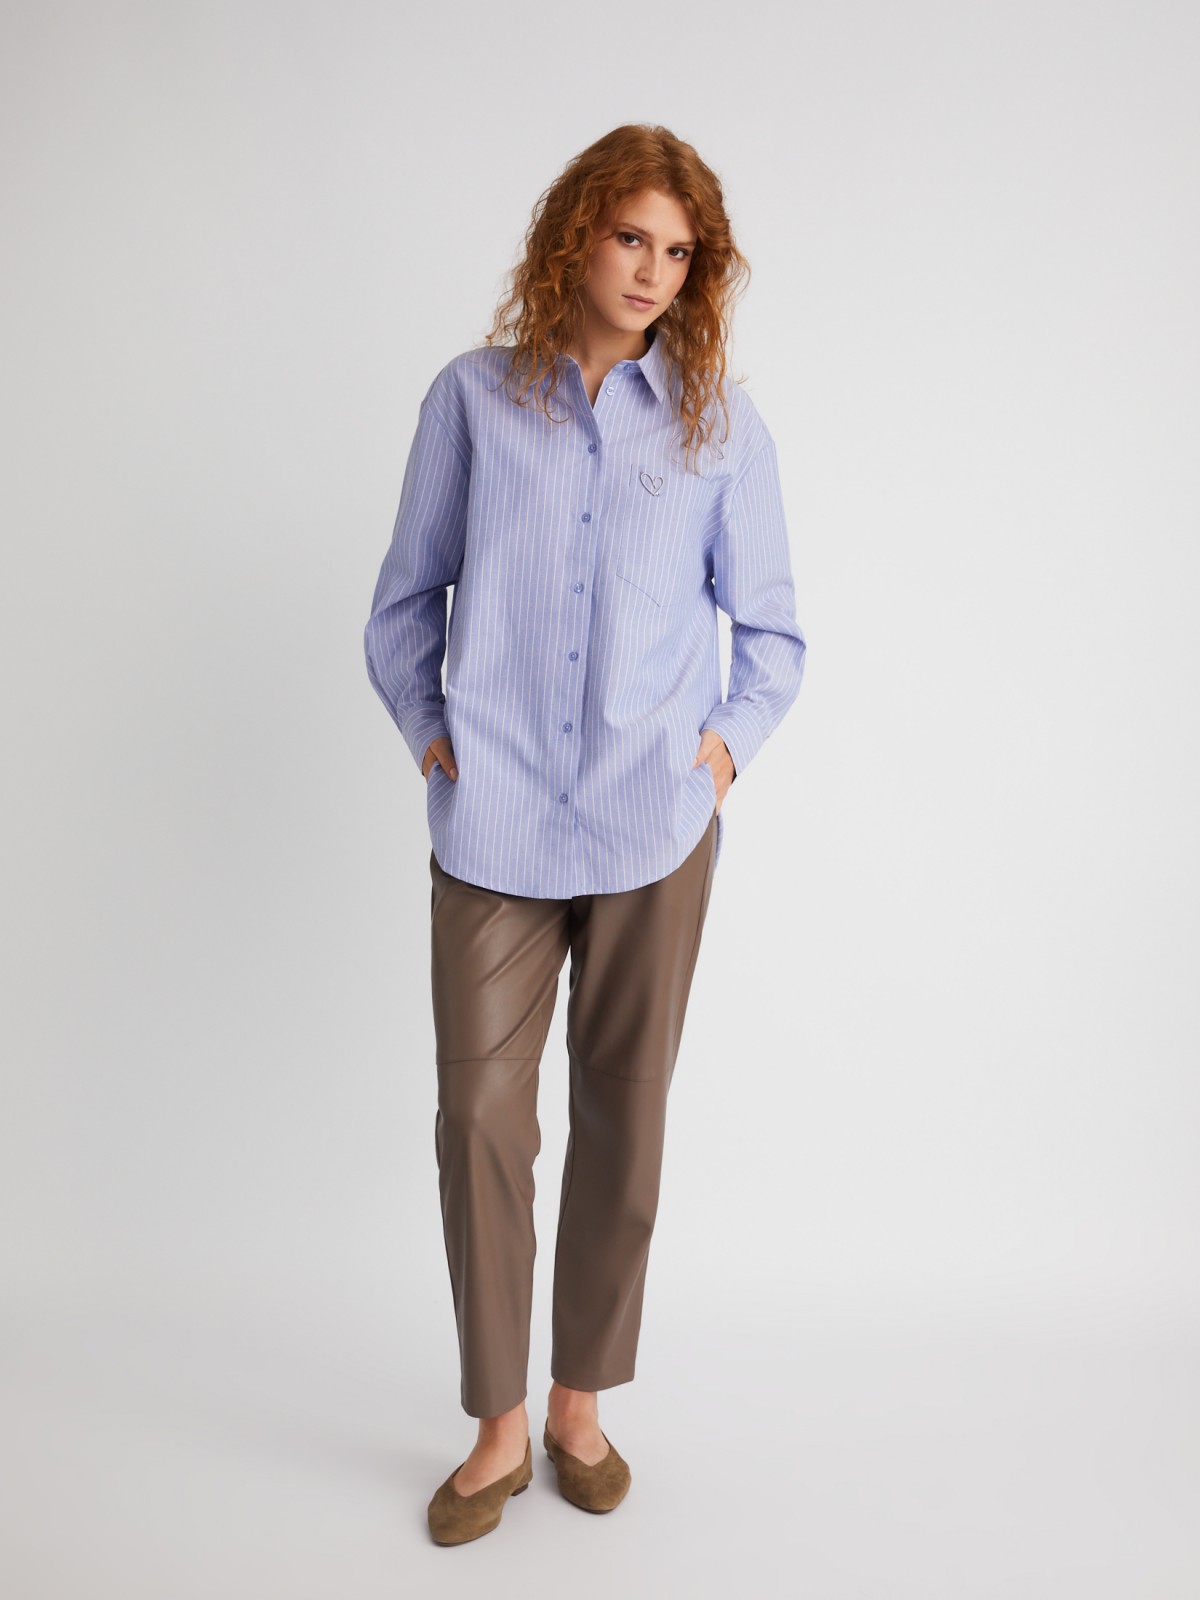 Офисная рубашка оверсайз силуэта в полоску с декоративной брошью zolla 023331162073, цвет светло-голубой, размер XS - фото 2